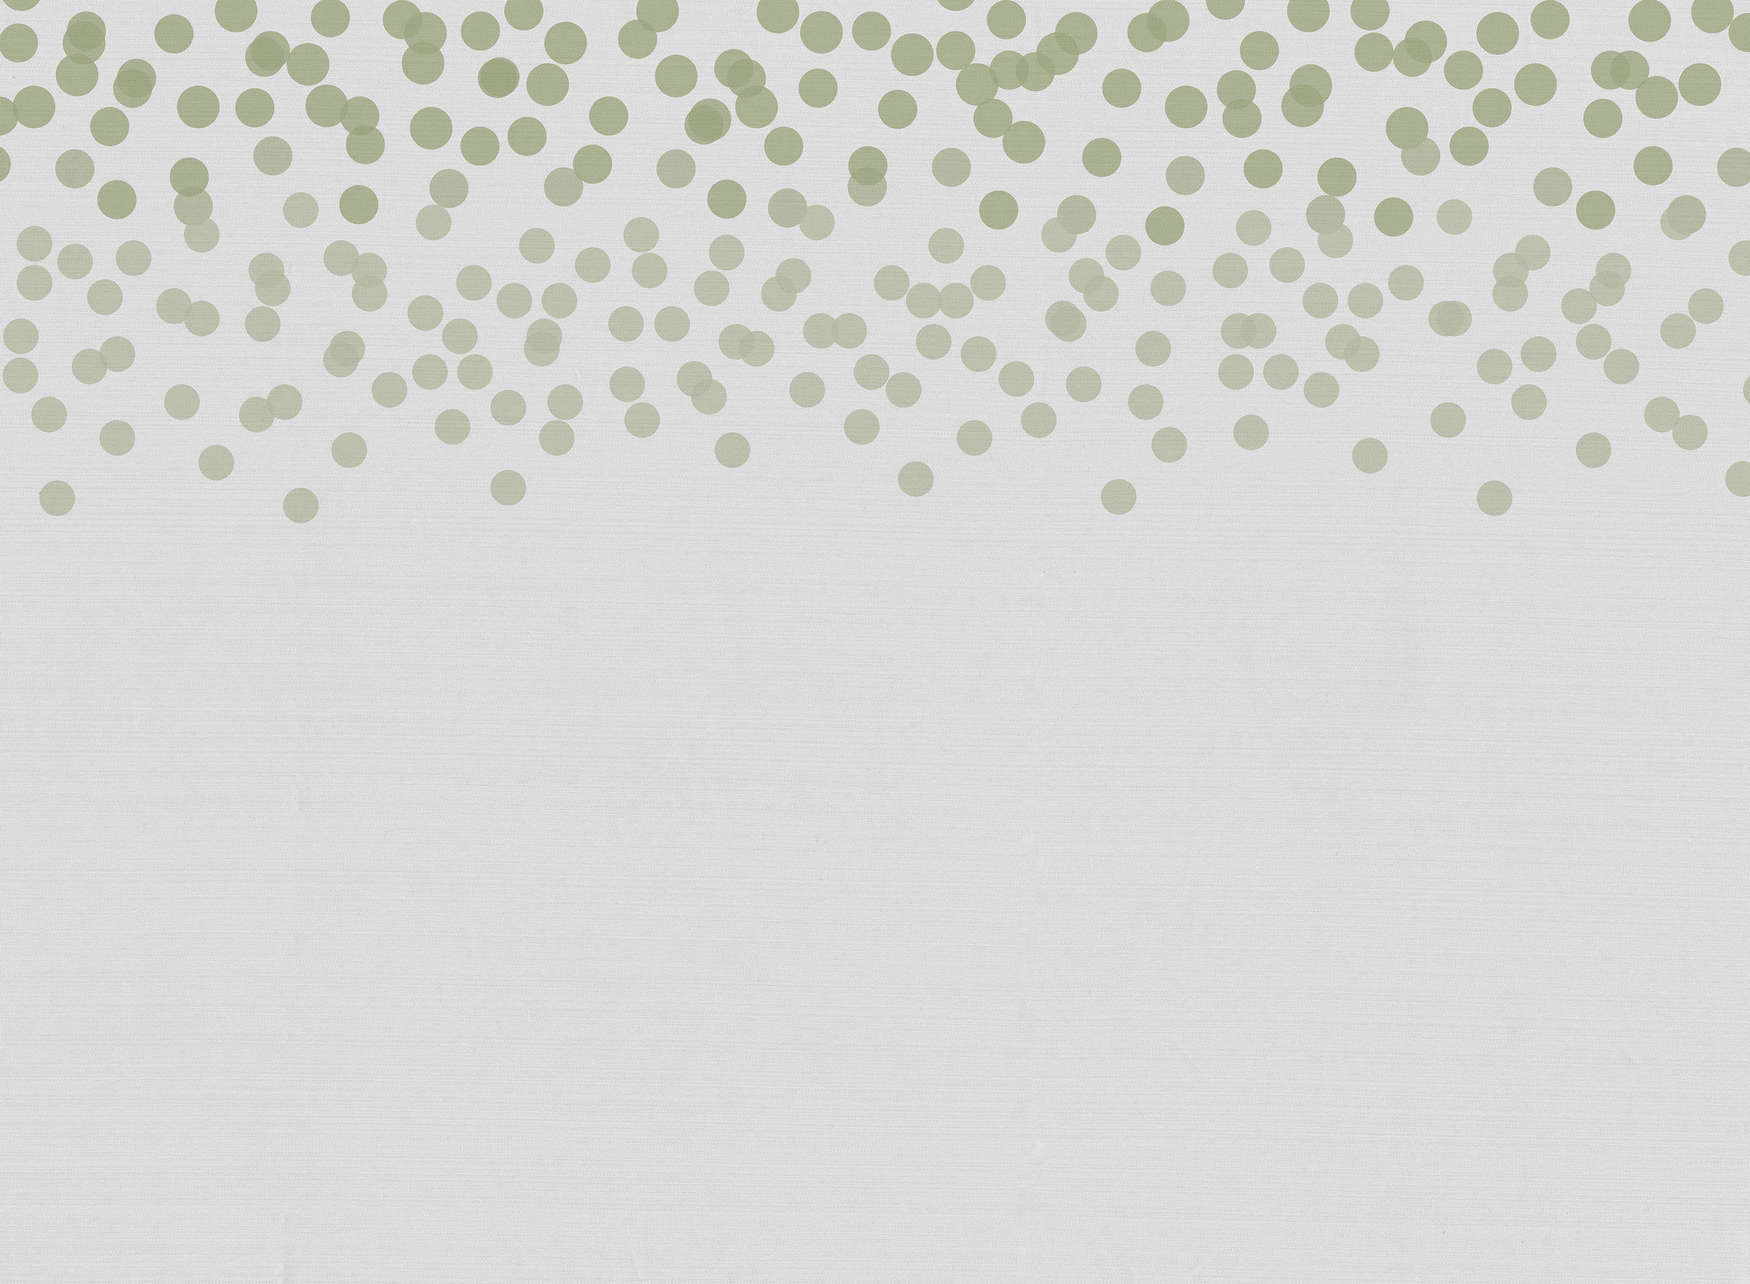             Papier peint à motifs de points discrets - vert, gris
        